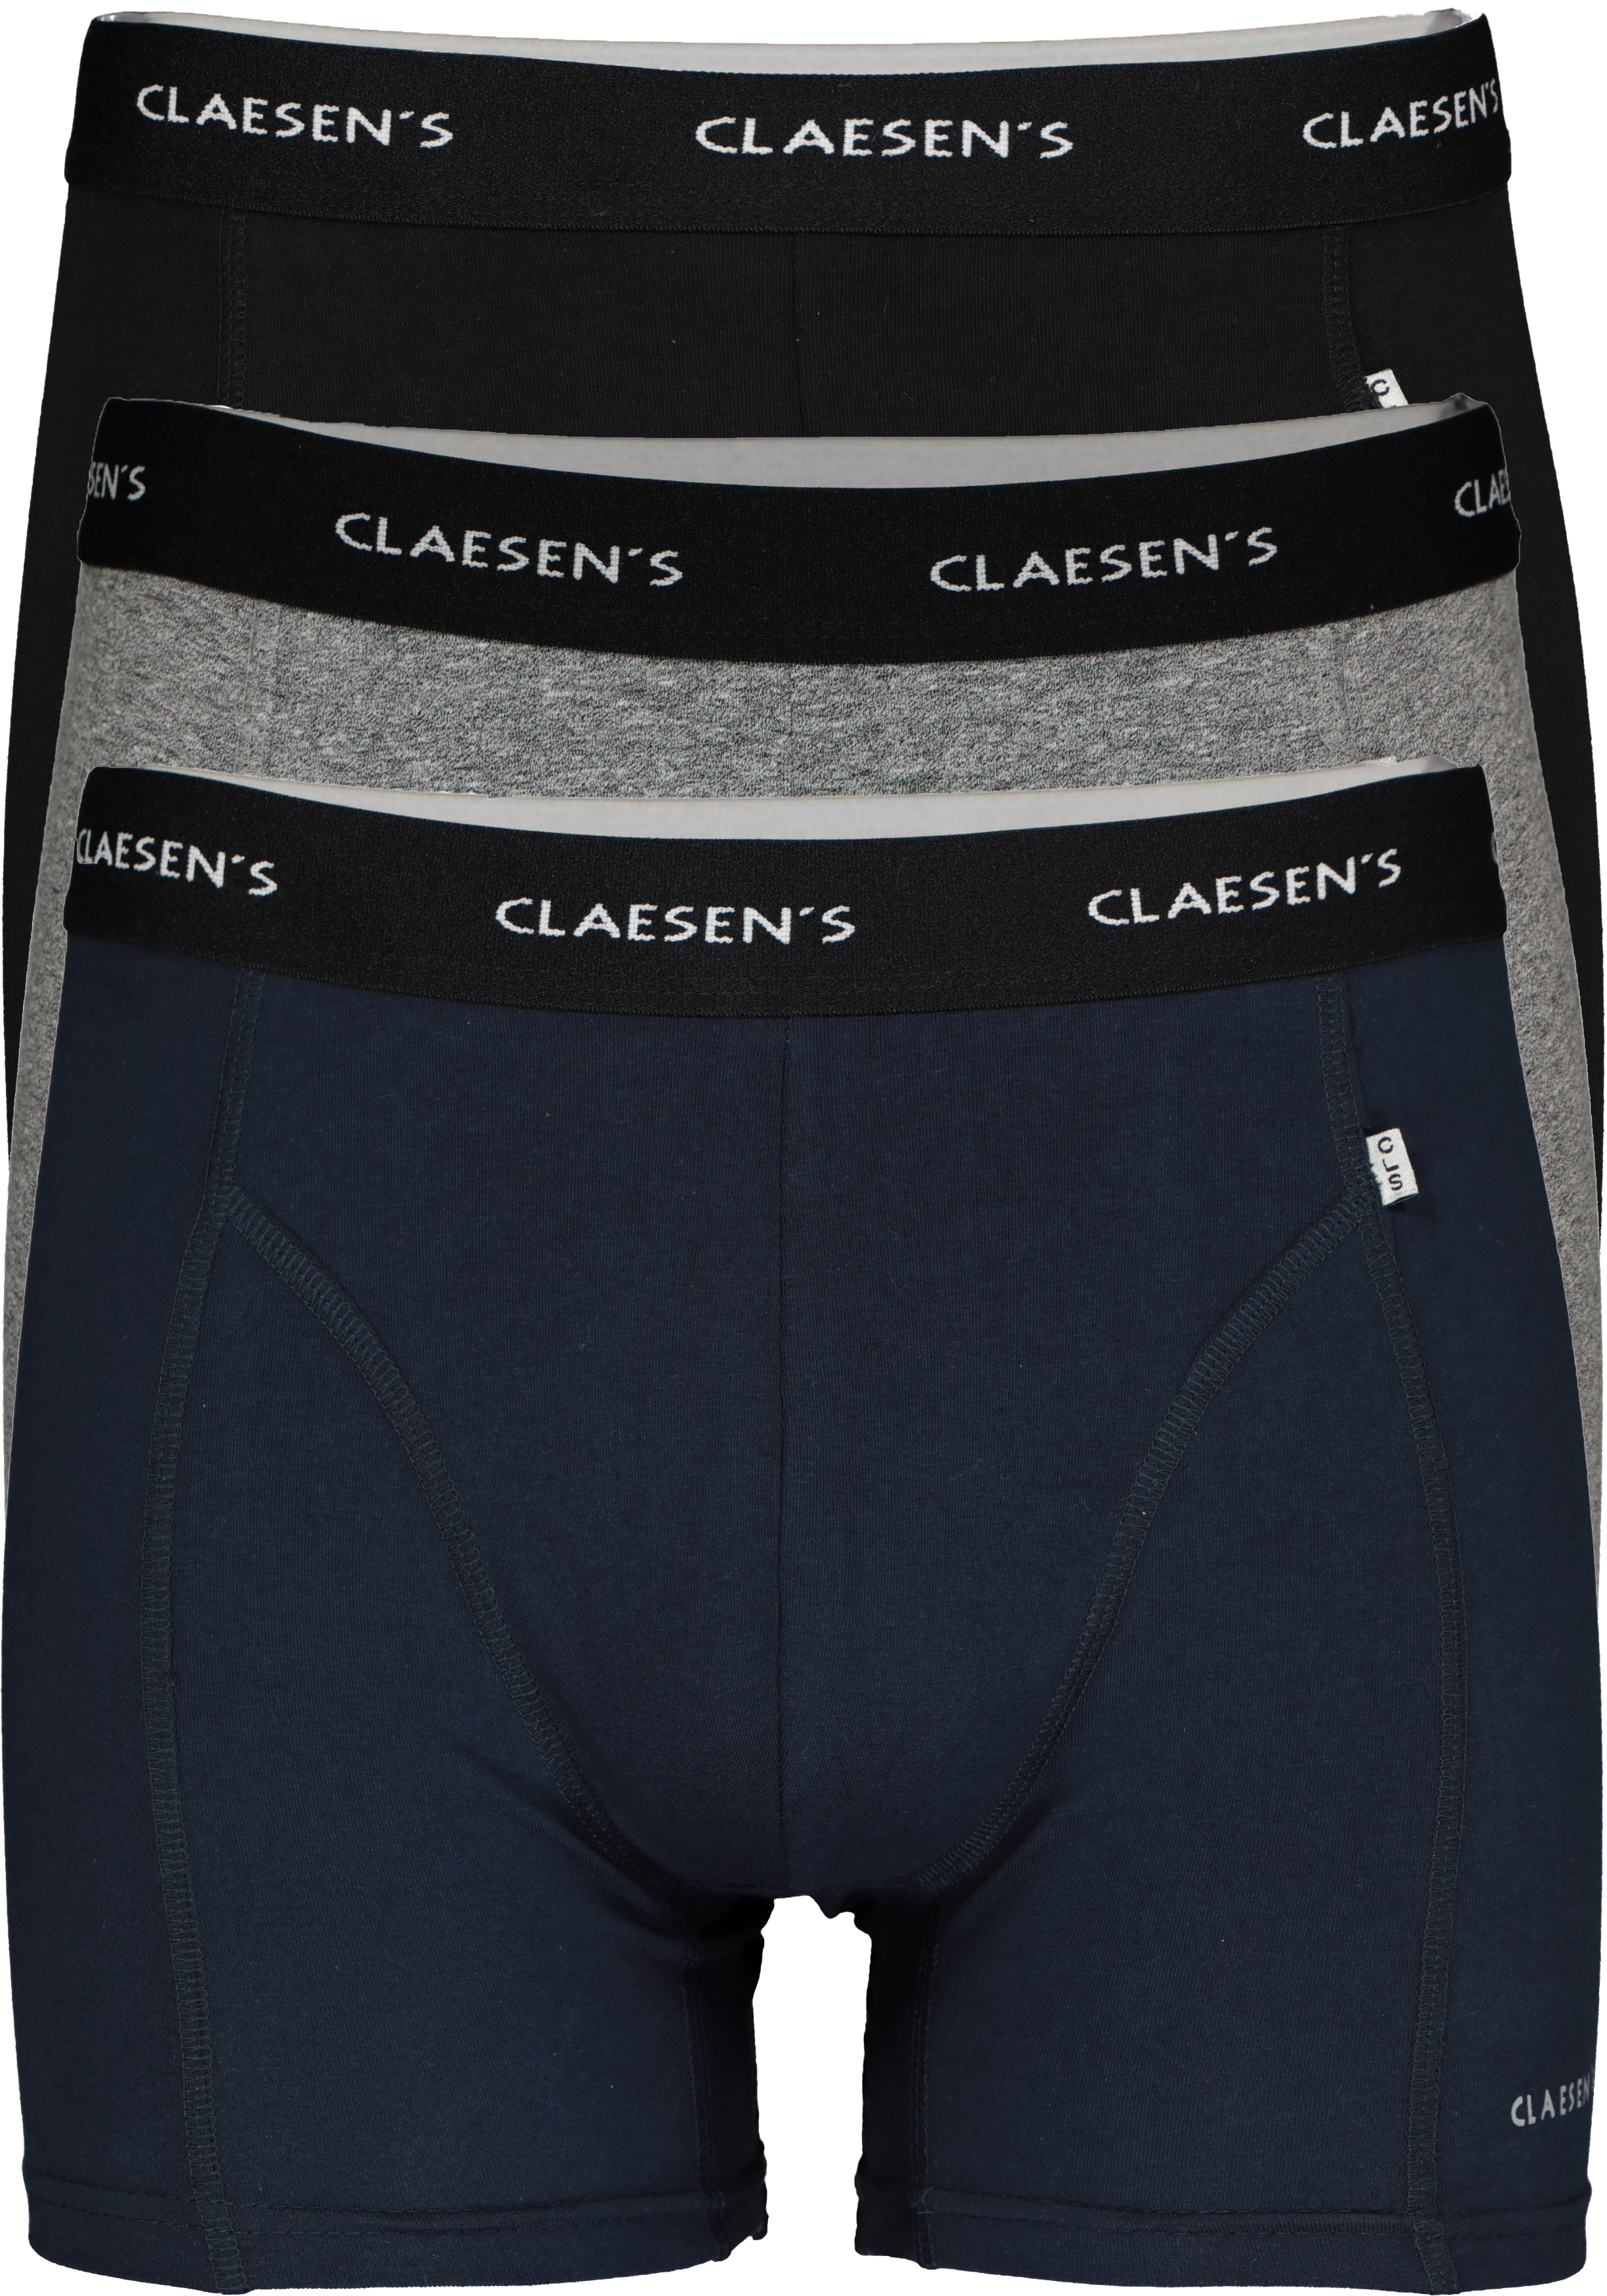 zweer Kunstmatig Deter Claesen's Basics boxers (3-pack), heren boxers lang, zwart, grijs... - SALE  tot 50% korting